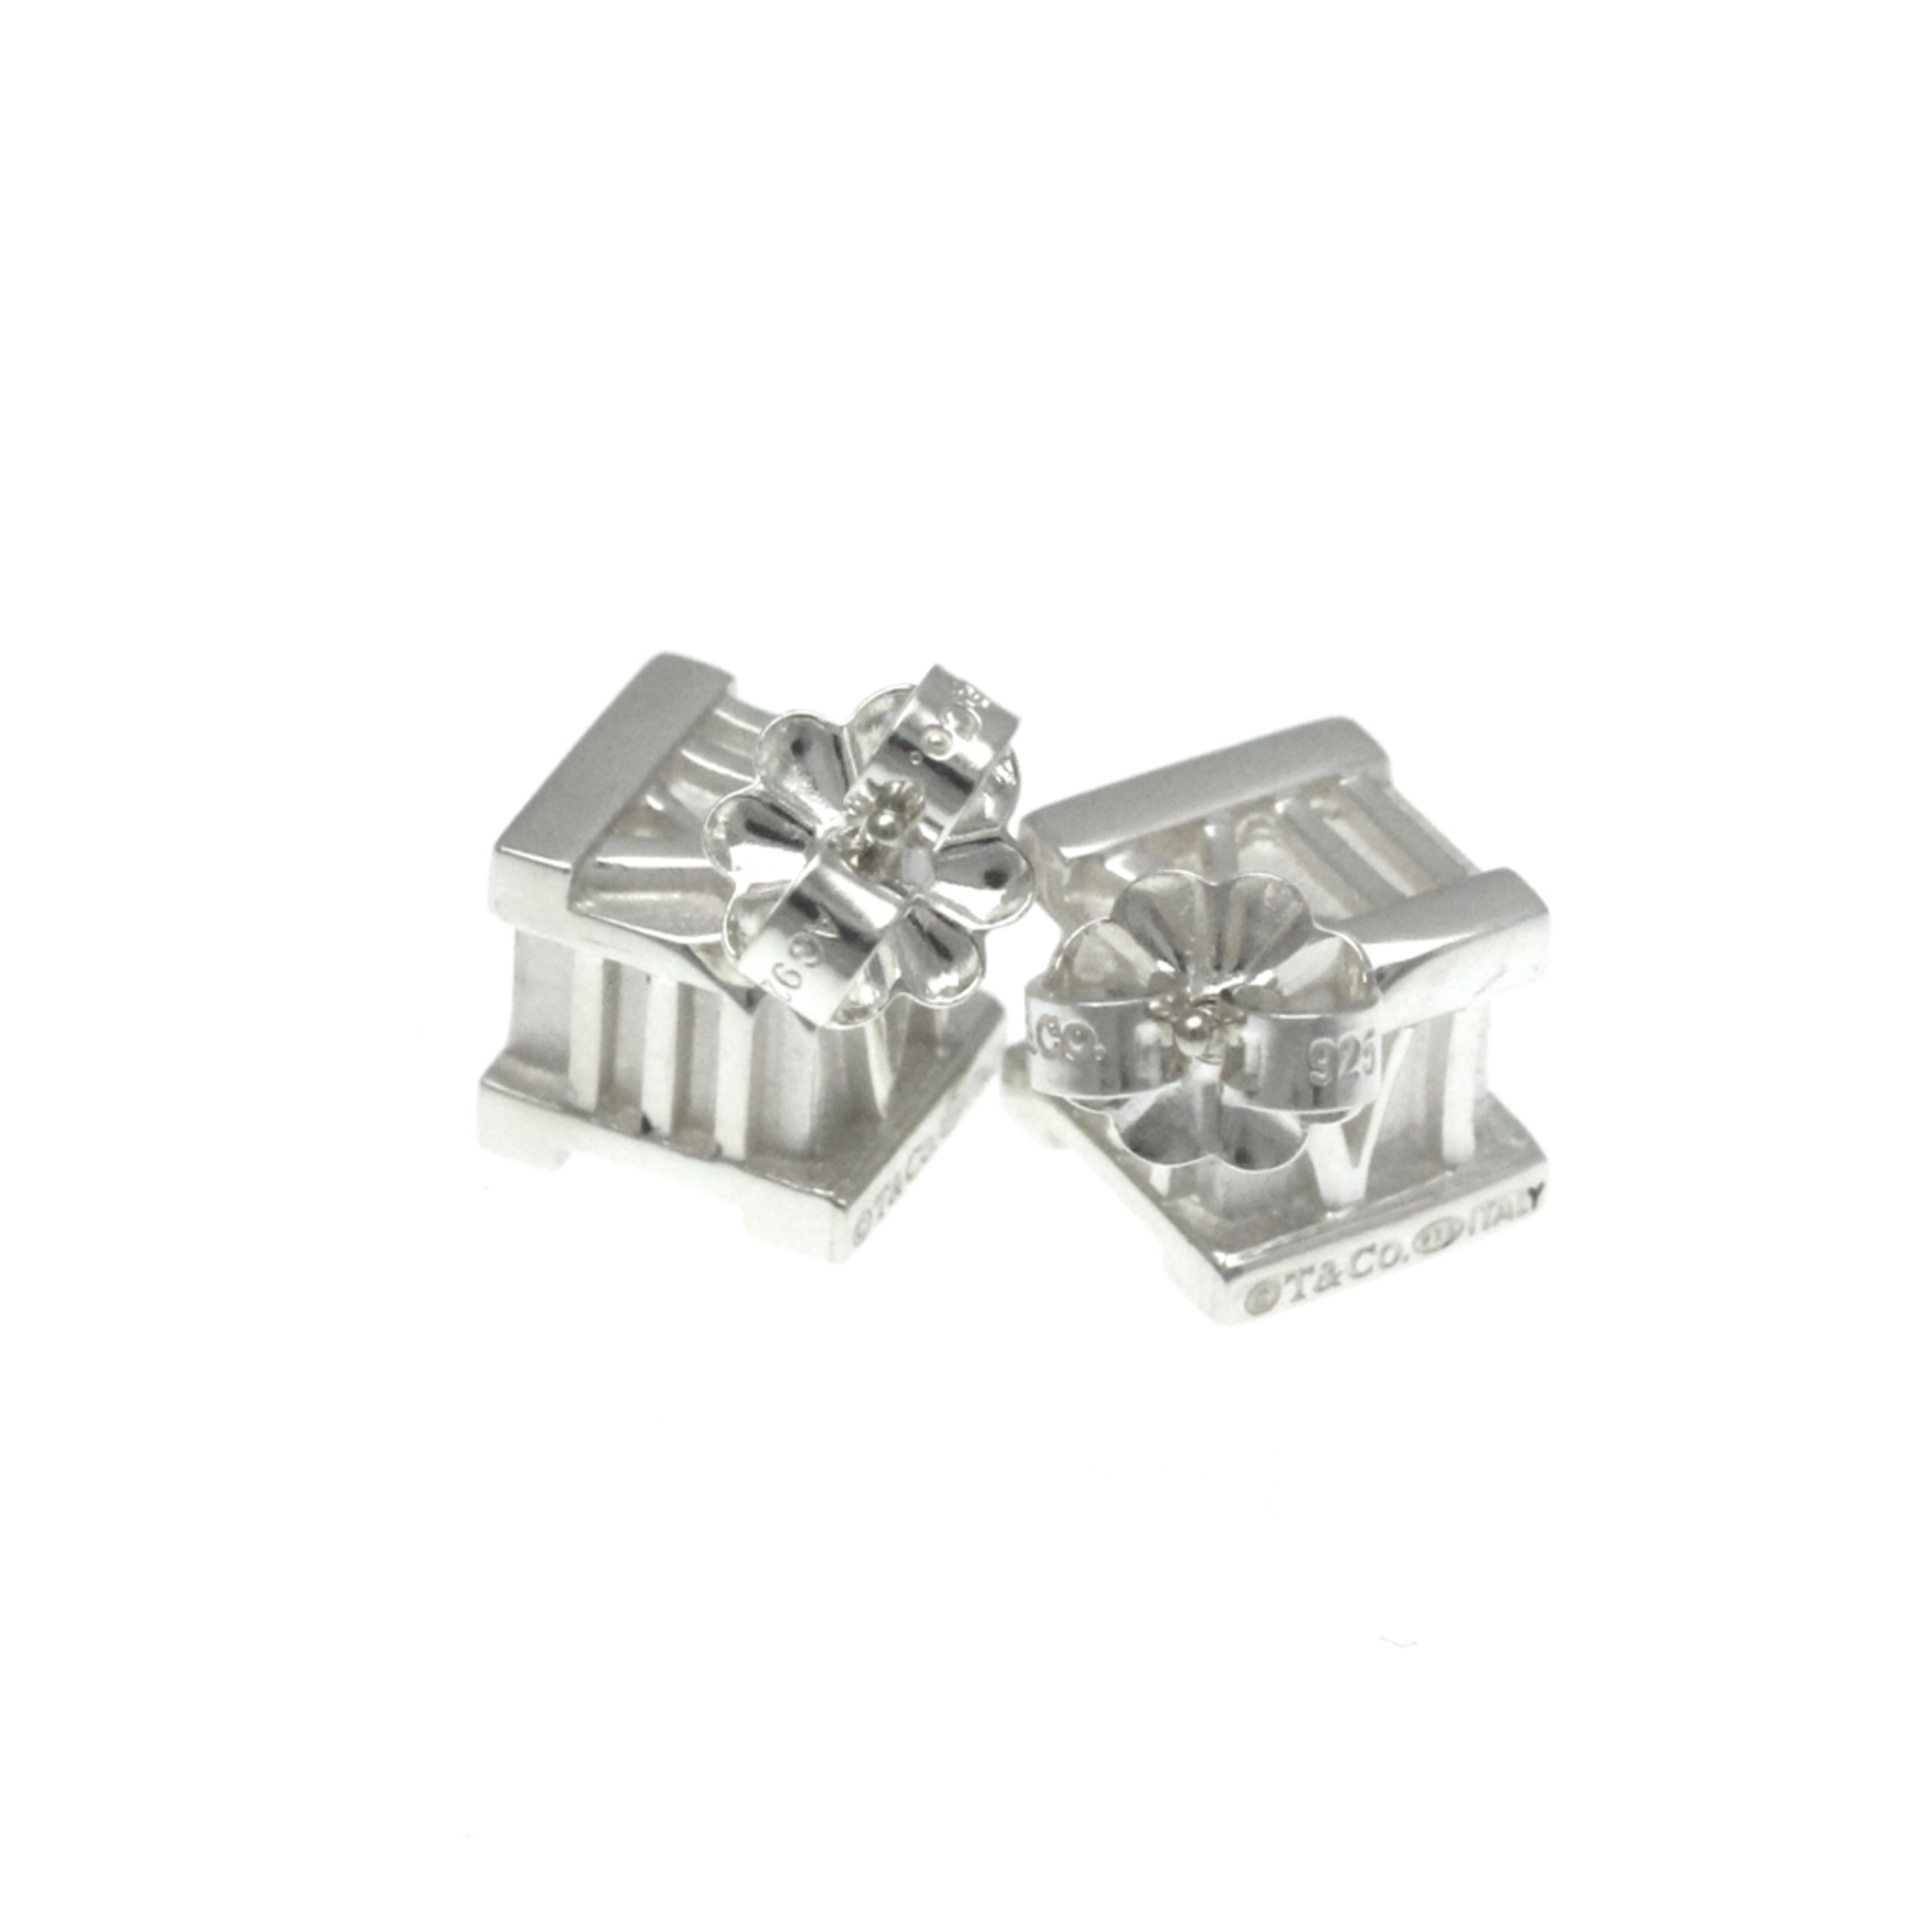 Tiffany Atlas Cube Earrings No Stone Silver 925 Stud Earrings Silver